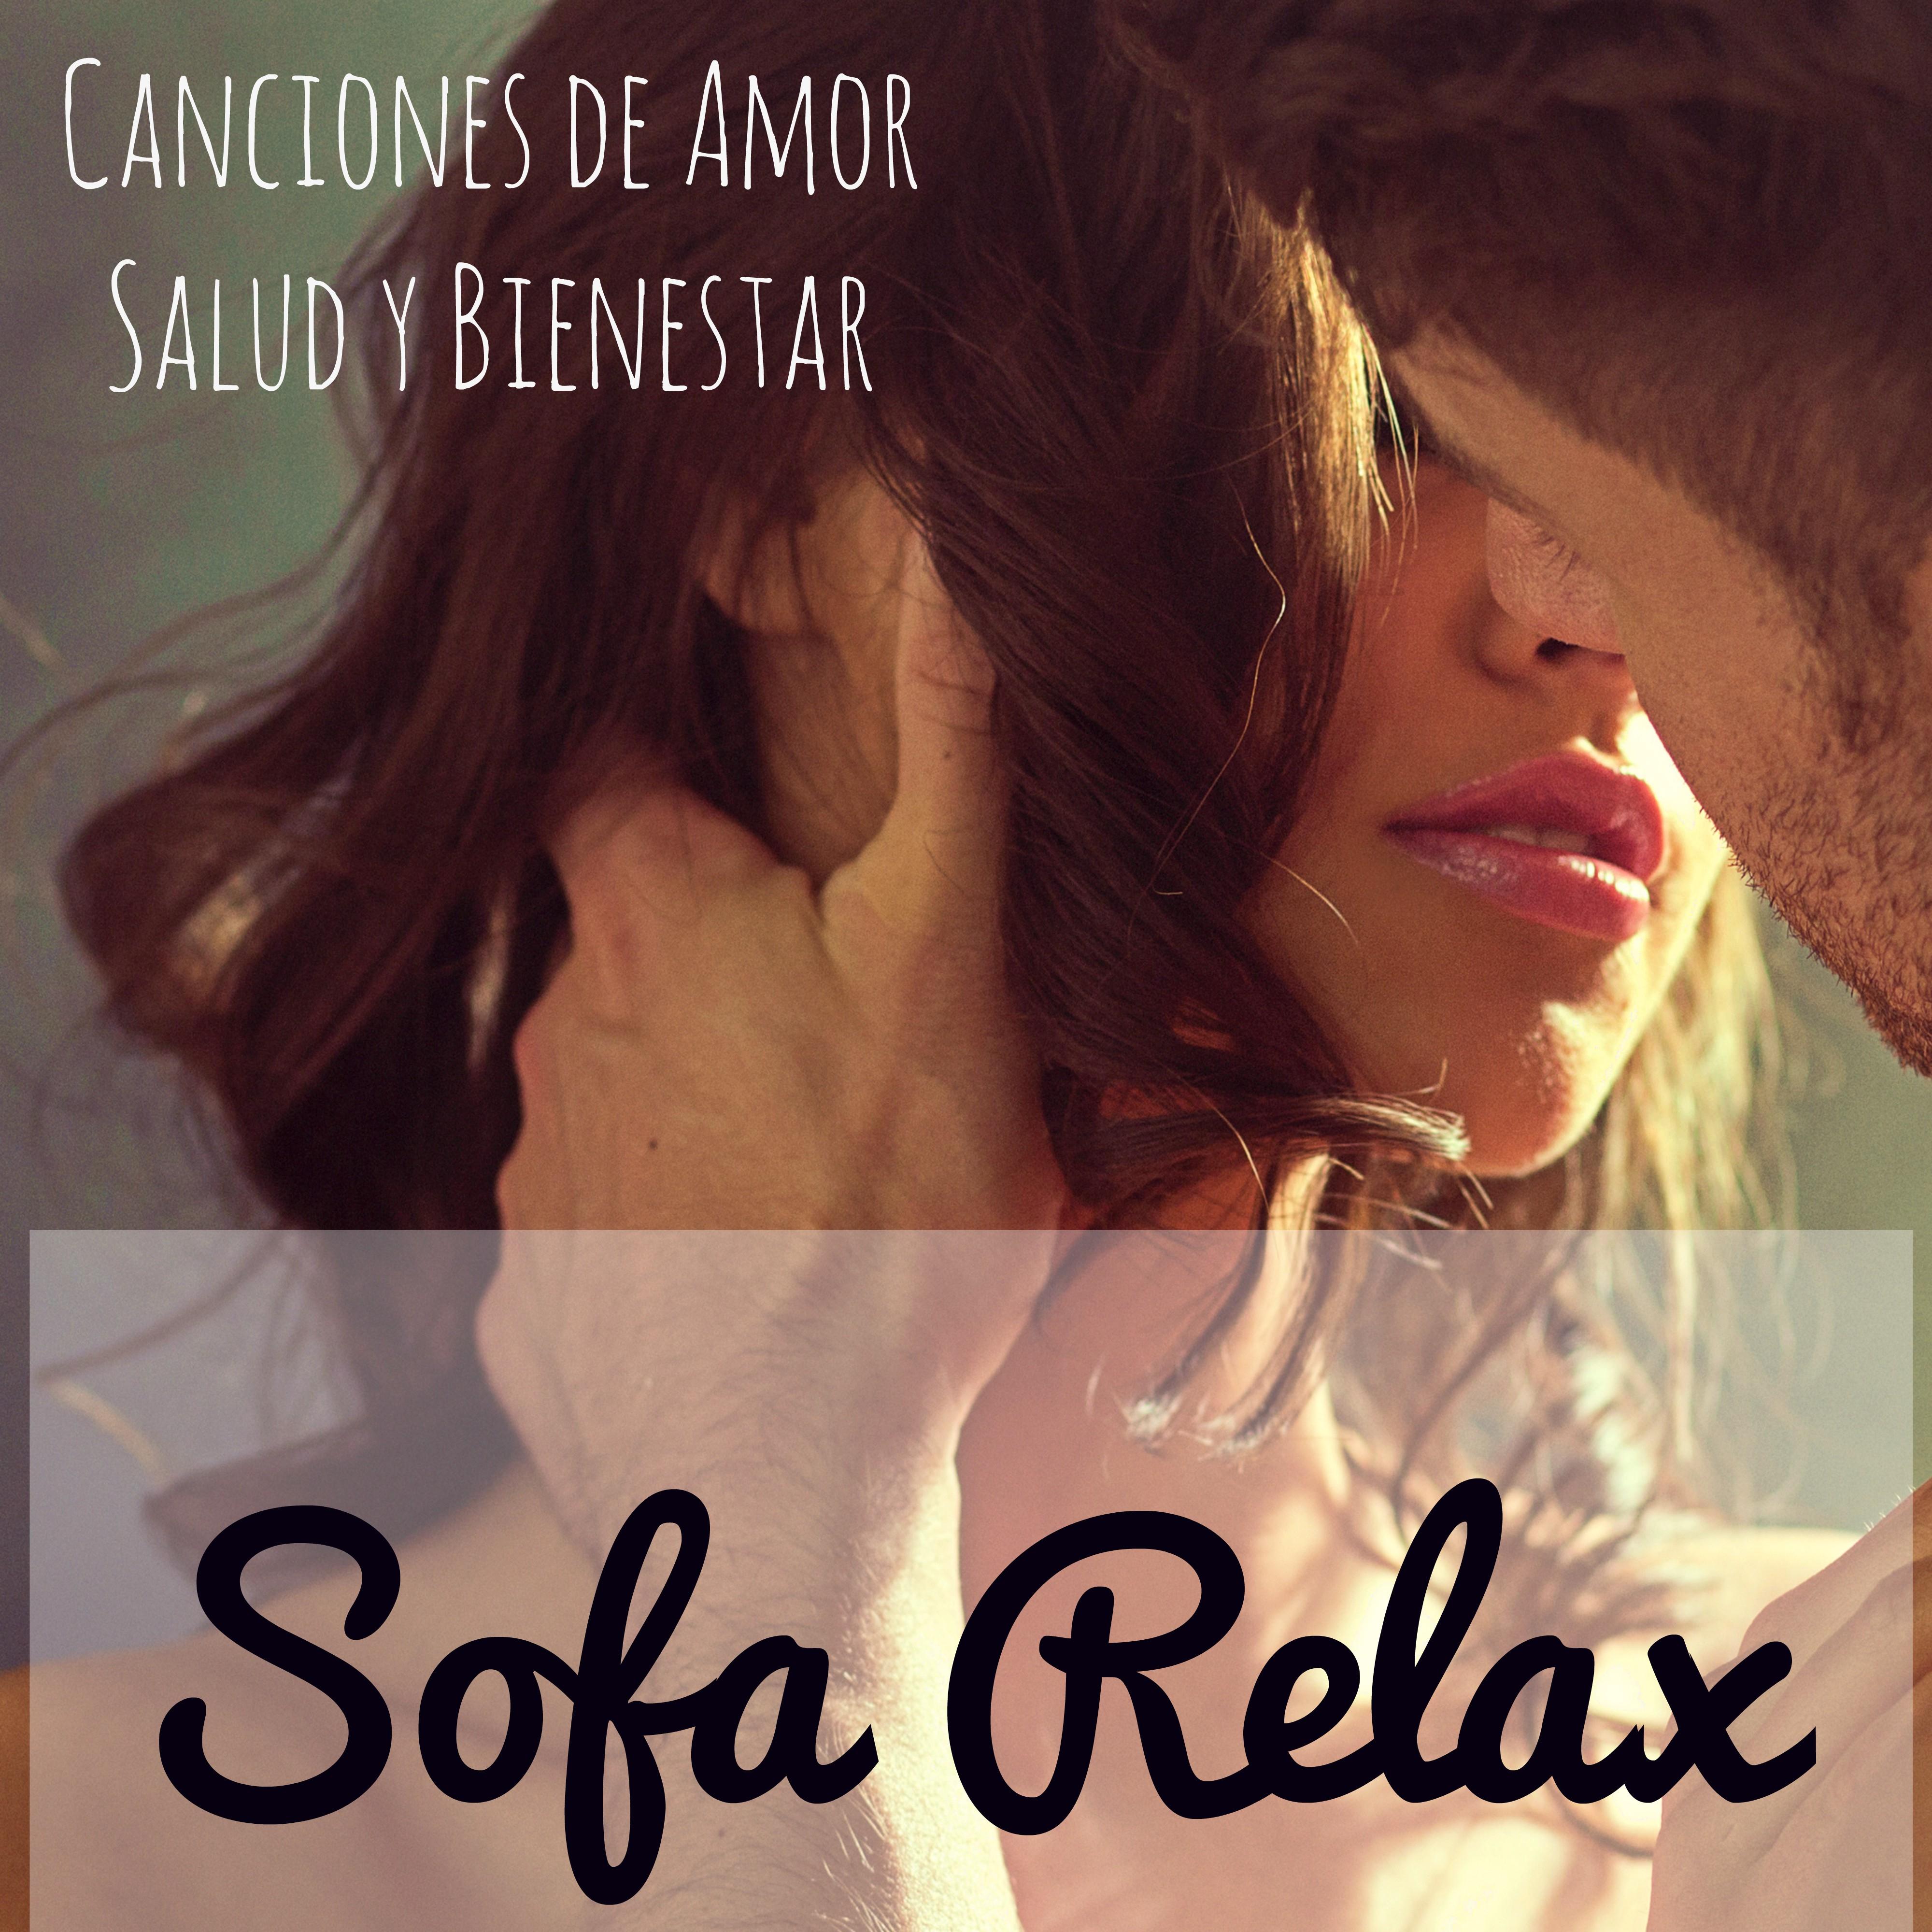 Sofa Relax  Canciones de Amor Salud y Bienestar Ejercicios de la Mente y Cuerpo, Mu sica Lounge Chillout Romantica Instrumental